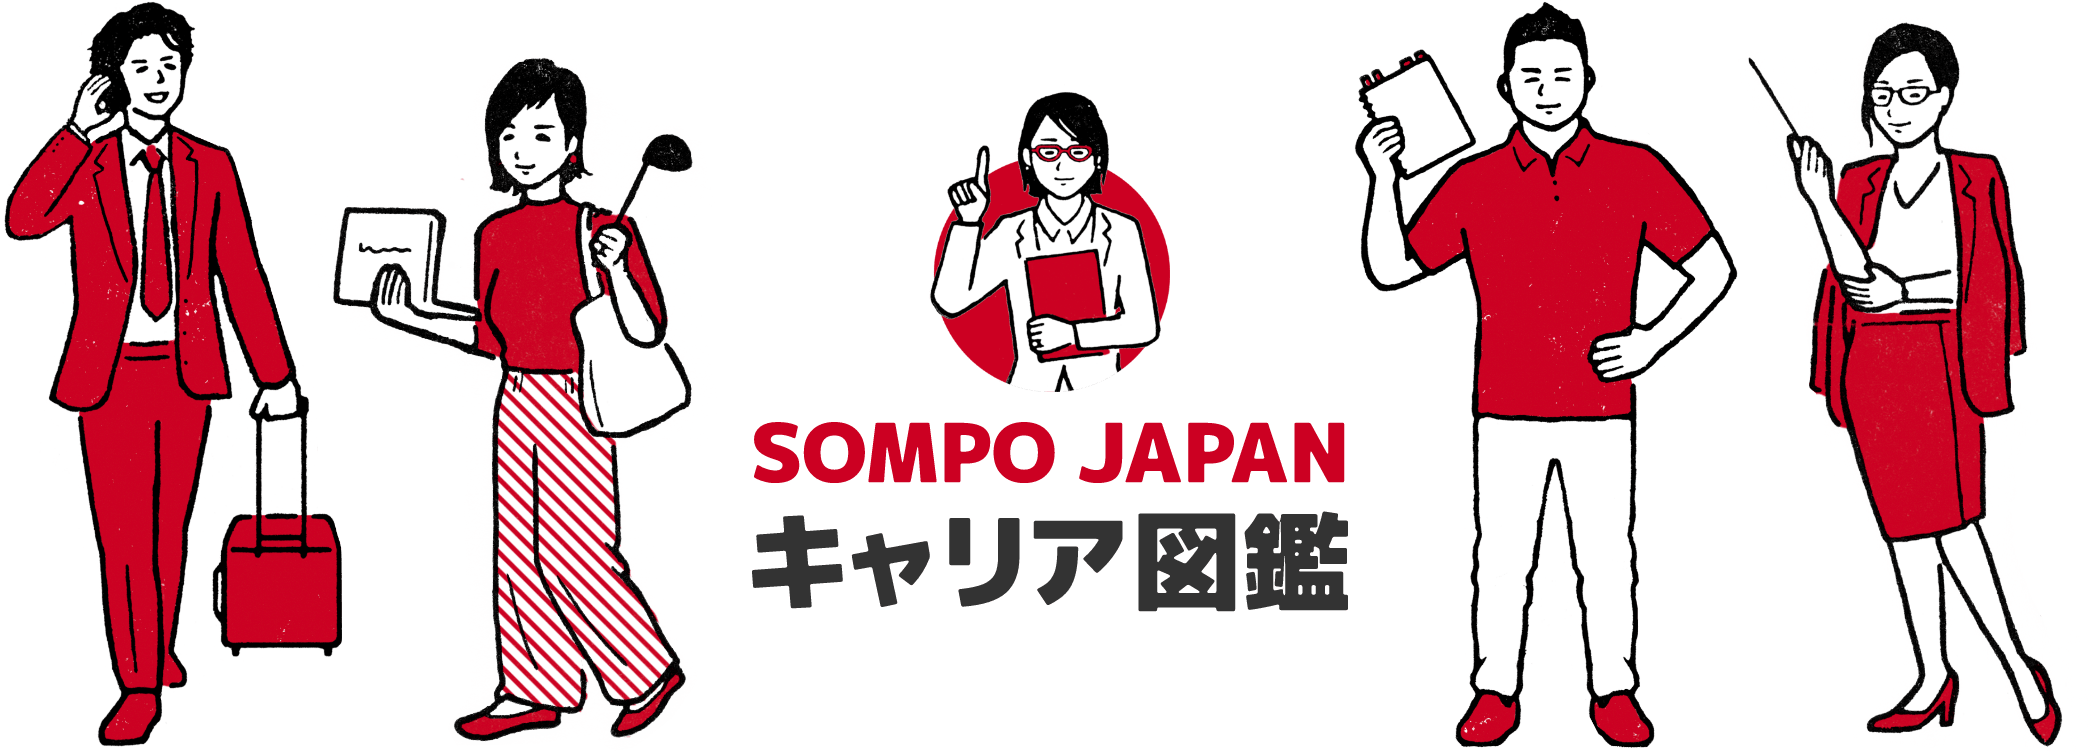 SOMPO Japan キャリア図鑑